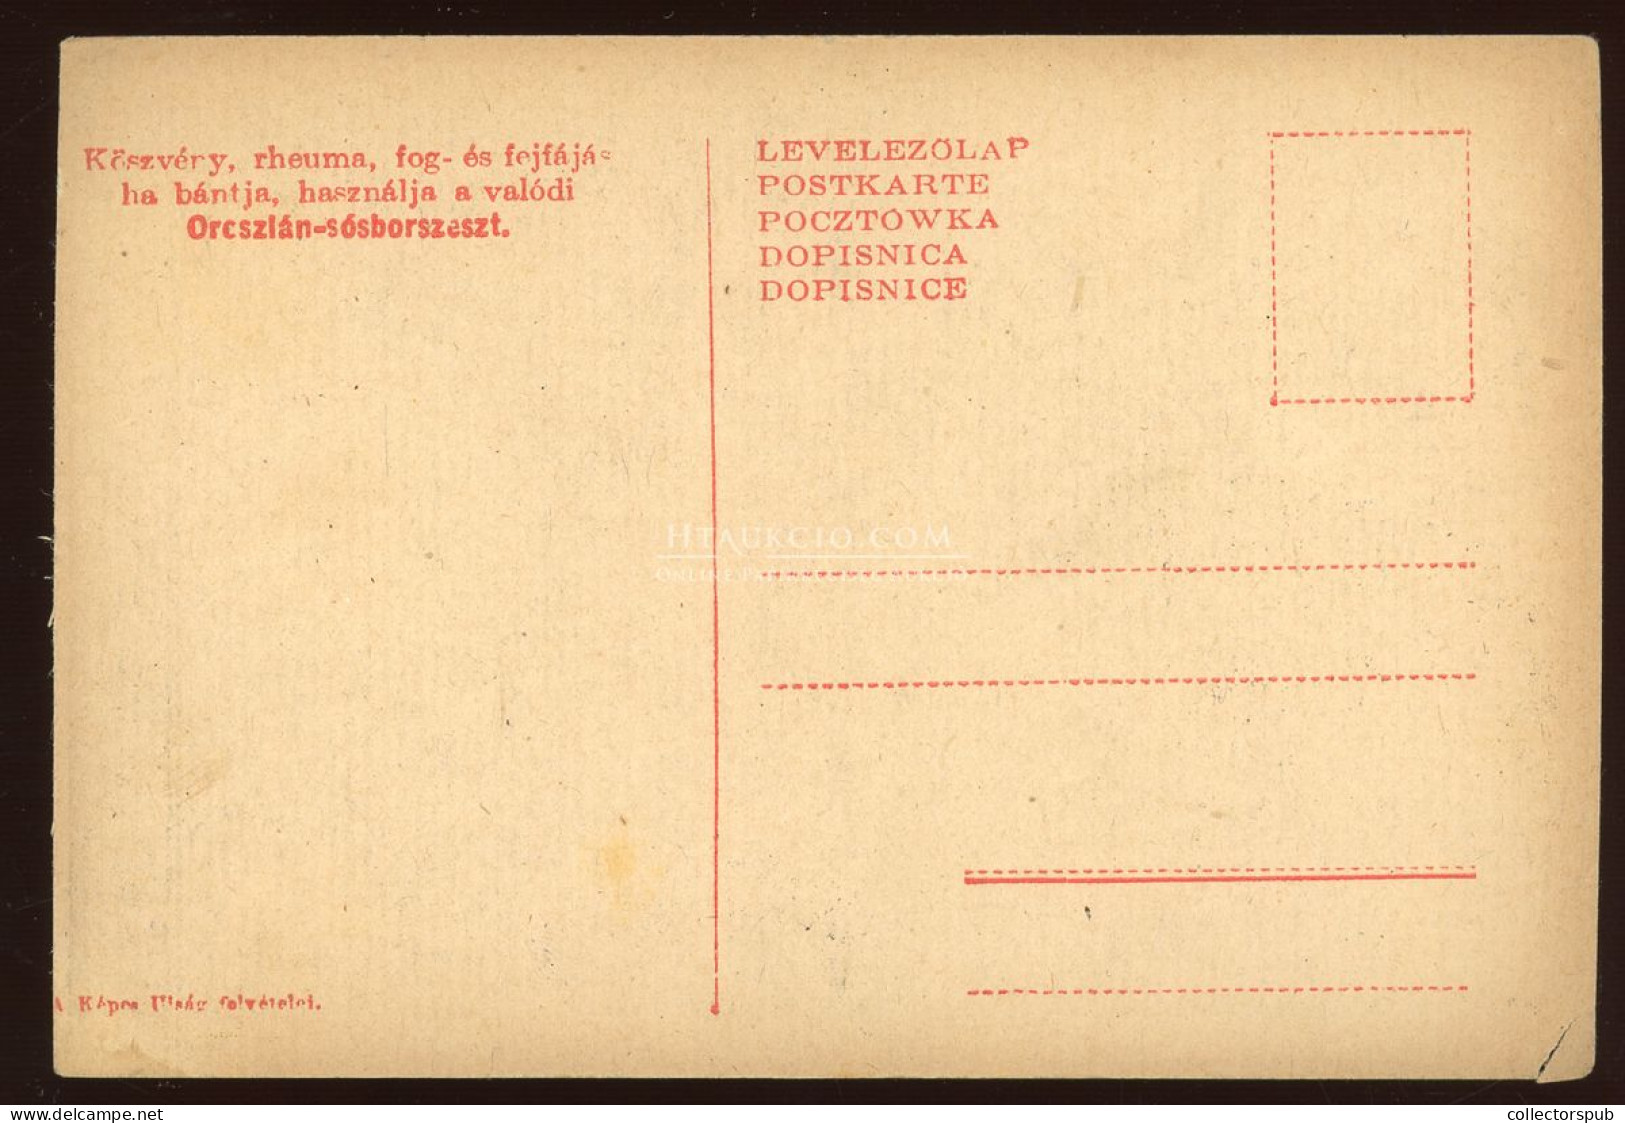 I. VH " Itatás" Oroszlán Sósborszesz Reklám. A Képes Újság Felvételei / WWI Austro-Hungarian K.u.K. Military, Advertisem - Krieg, Militär